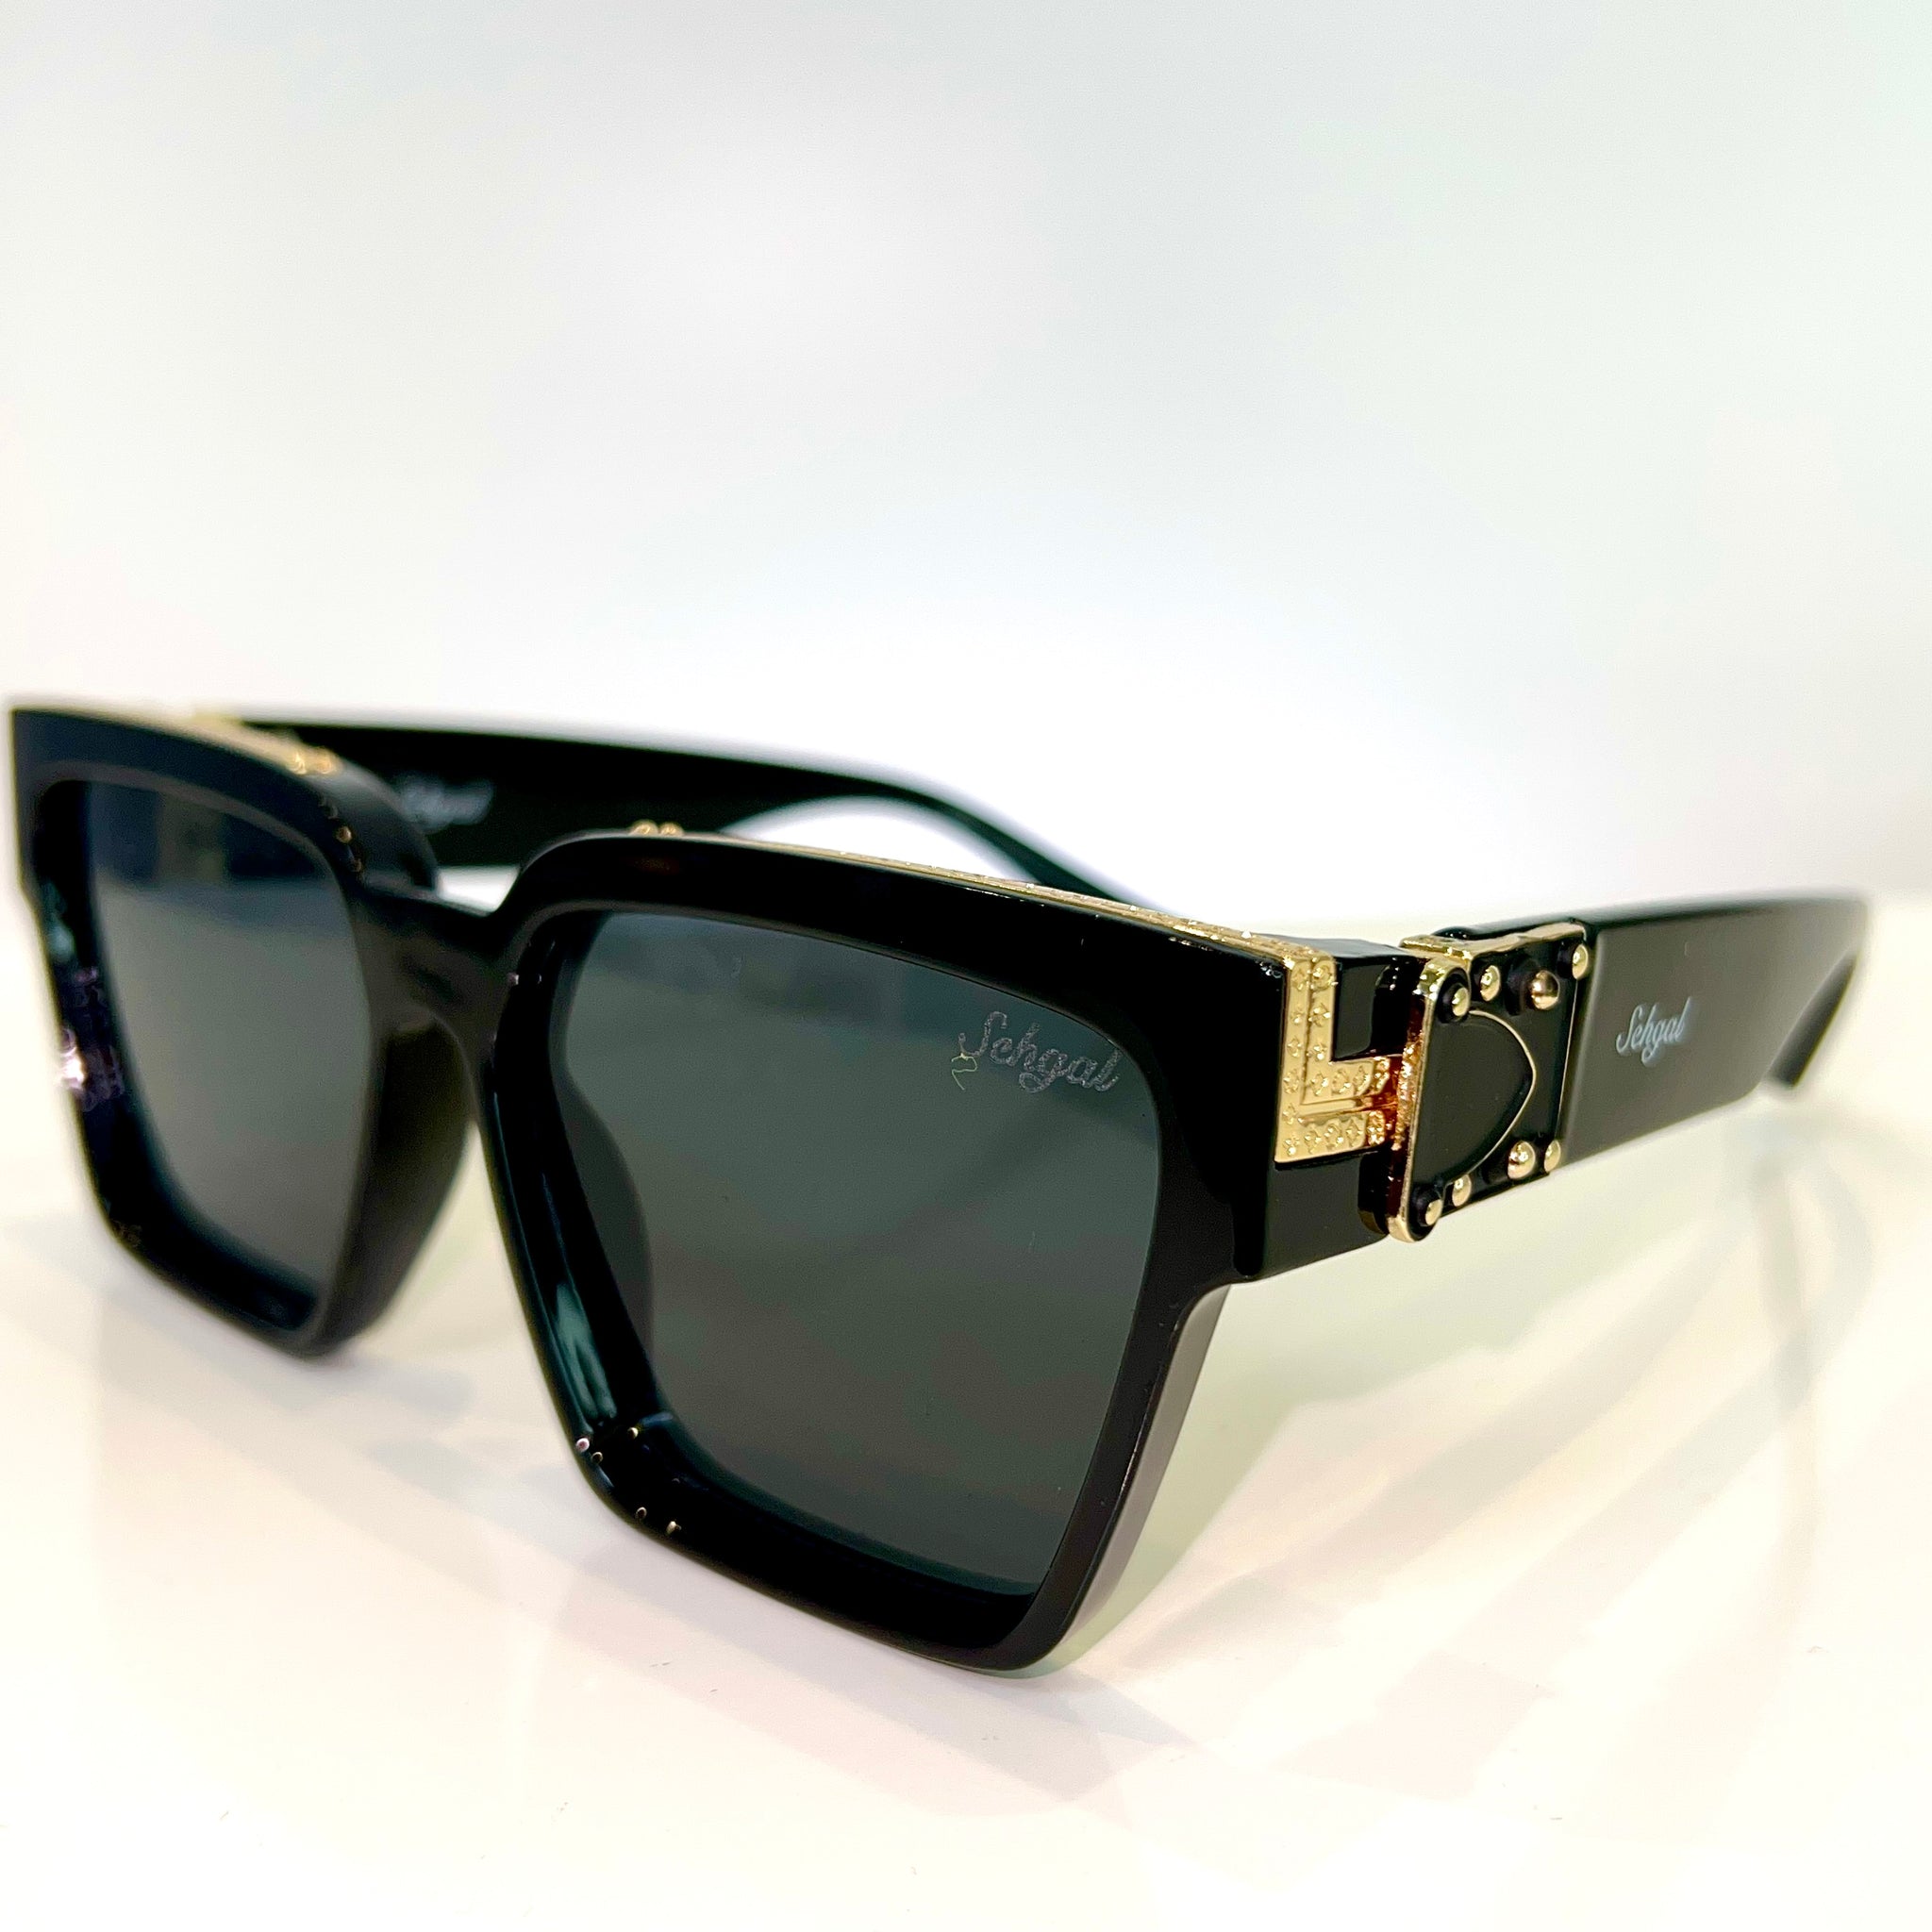 Majesty Glasses - 14 carat gold plated - Shiny black